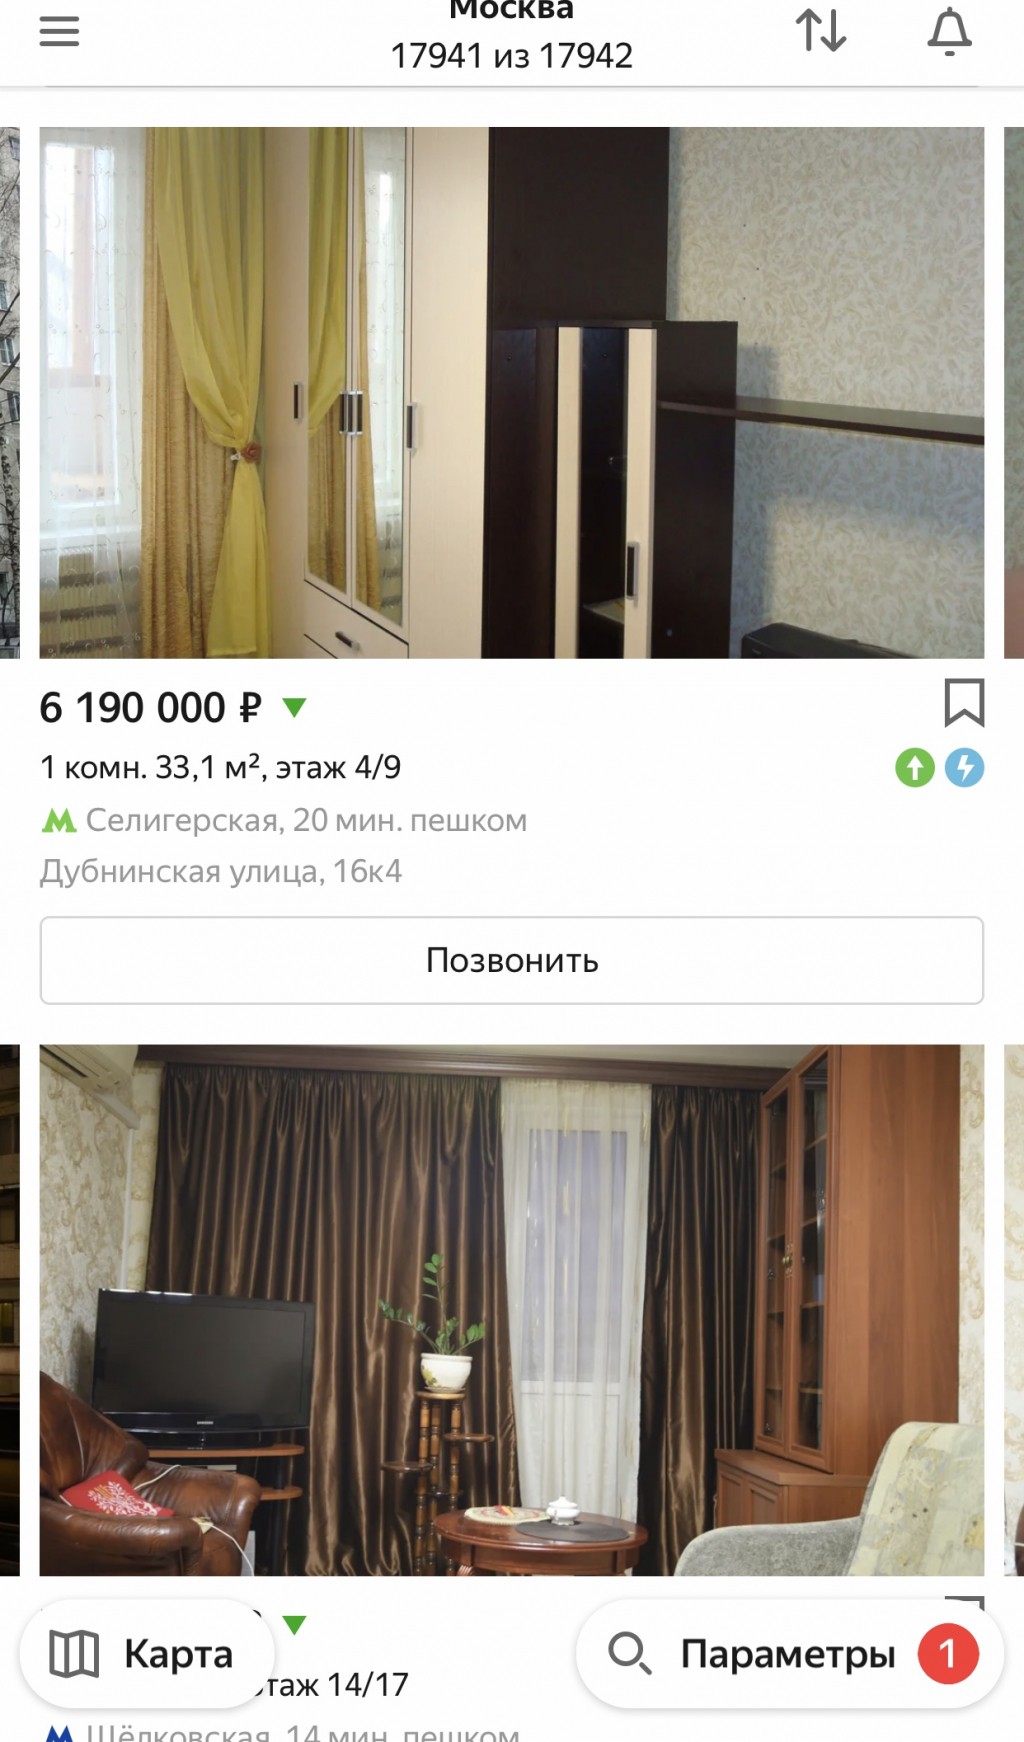 Яндекс.Недвижимость - Быстро продать квартиру